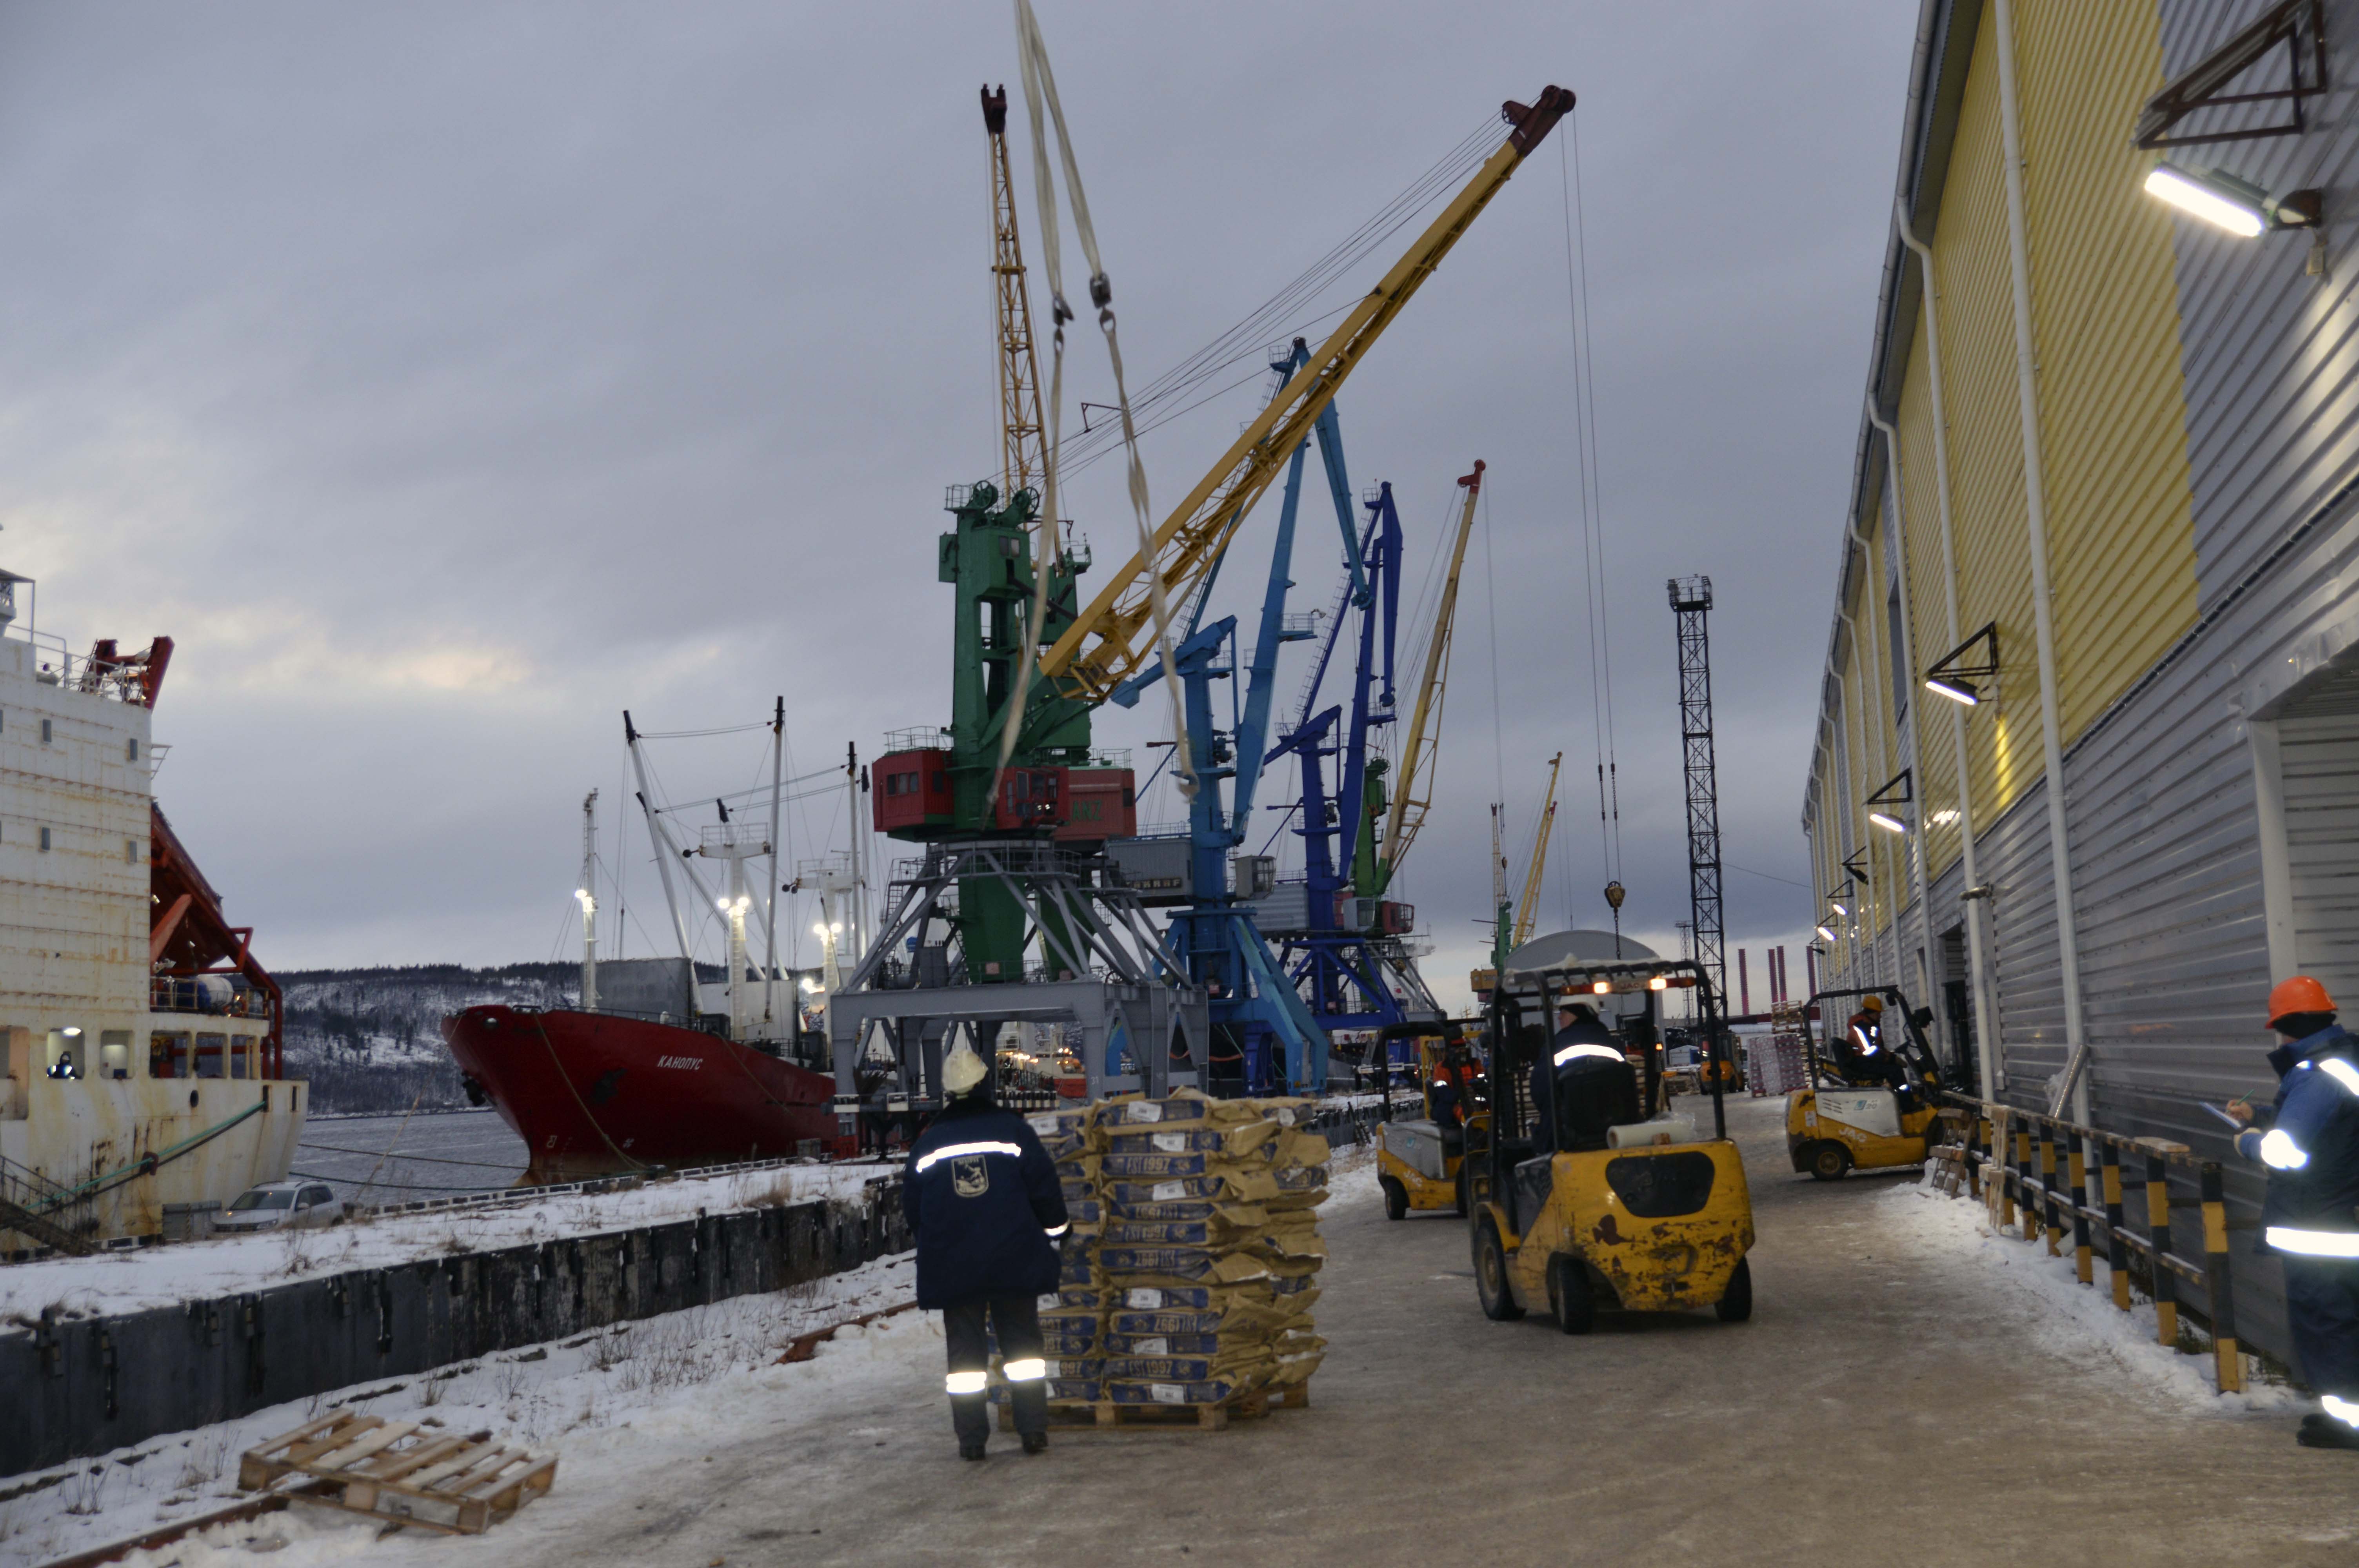 Управляющий ММРП Олег Креславский: Рыбаки опровергают делами клевету в адрес порта  